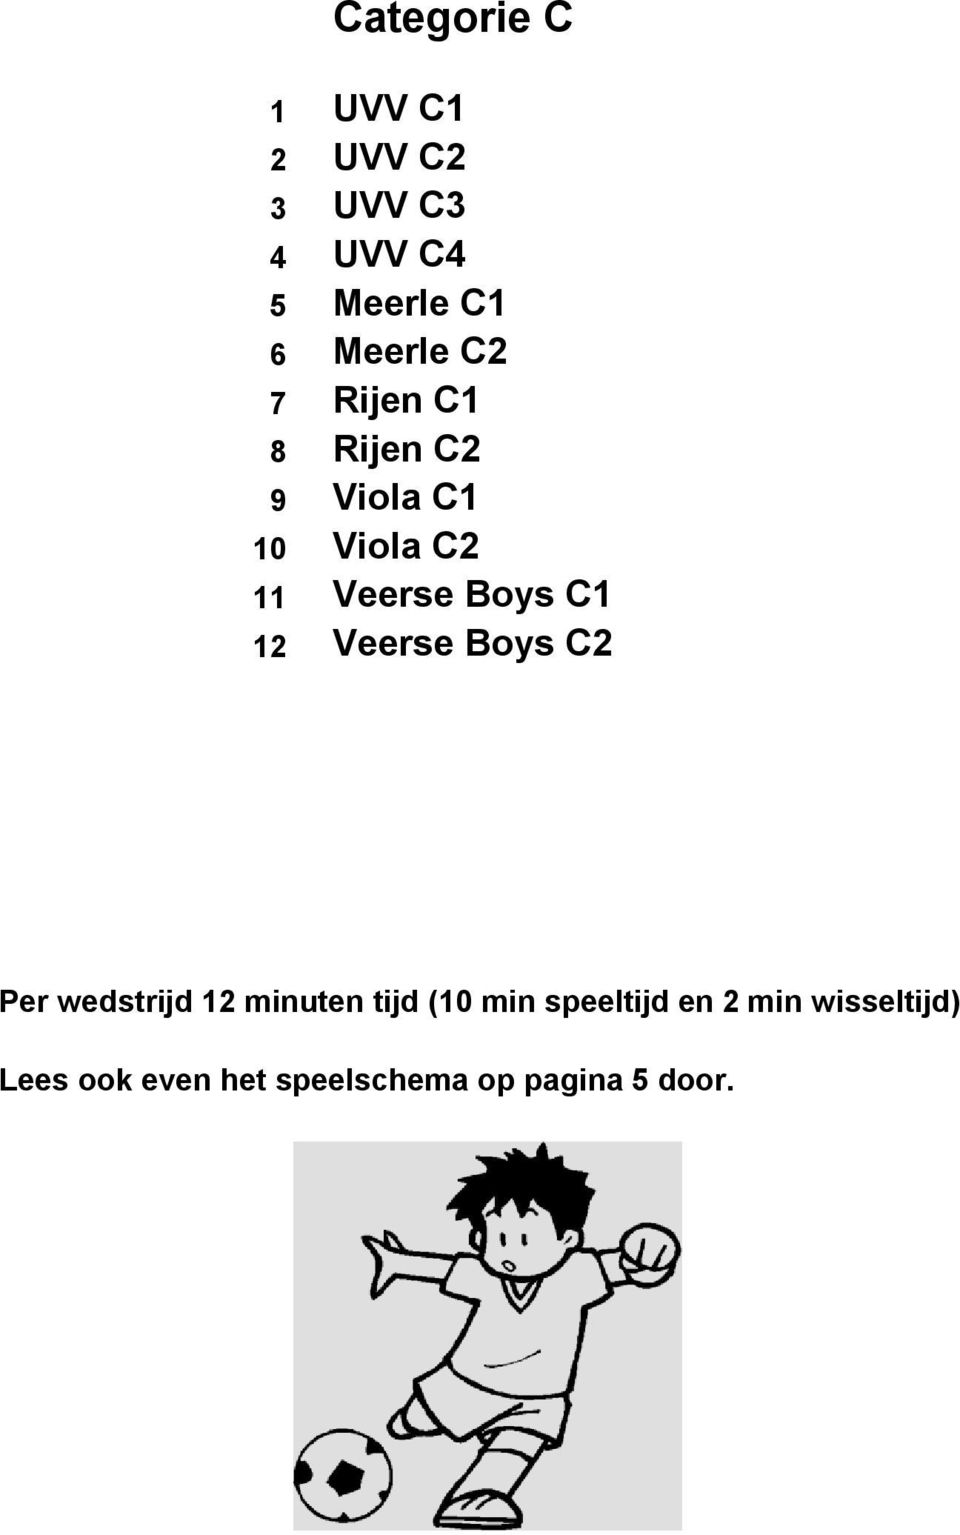 Boys C1 12 Veerse Boys C2 Per wedstrijd 12 minuten tijd (10 min